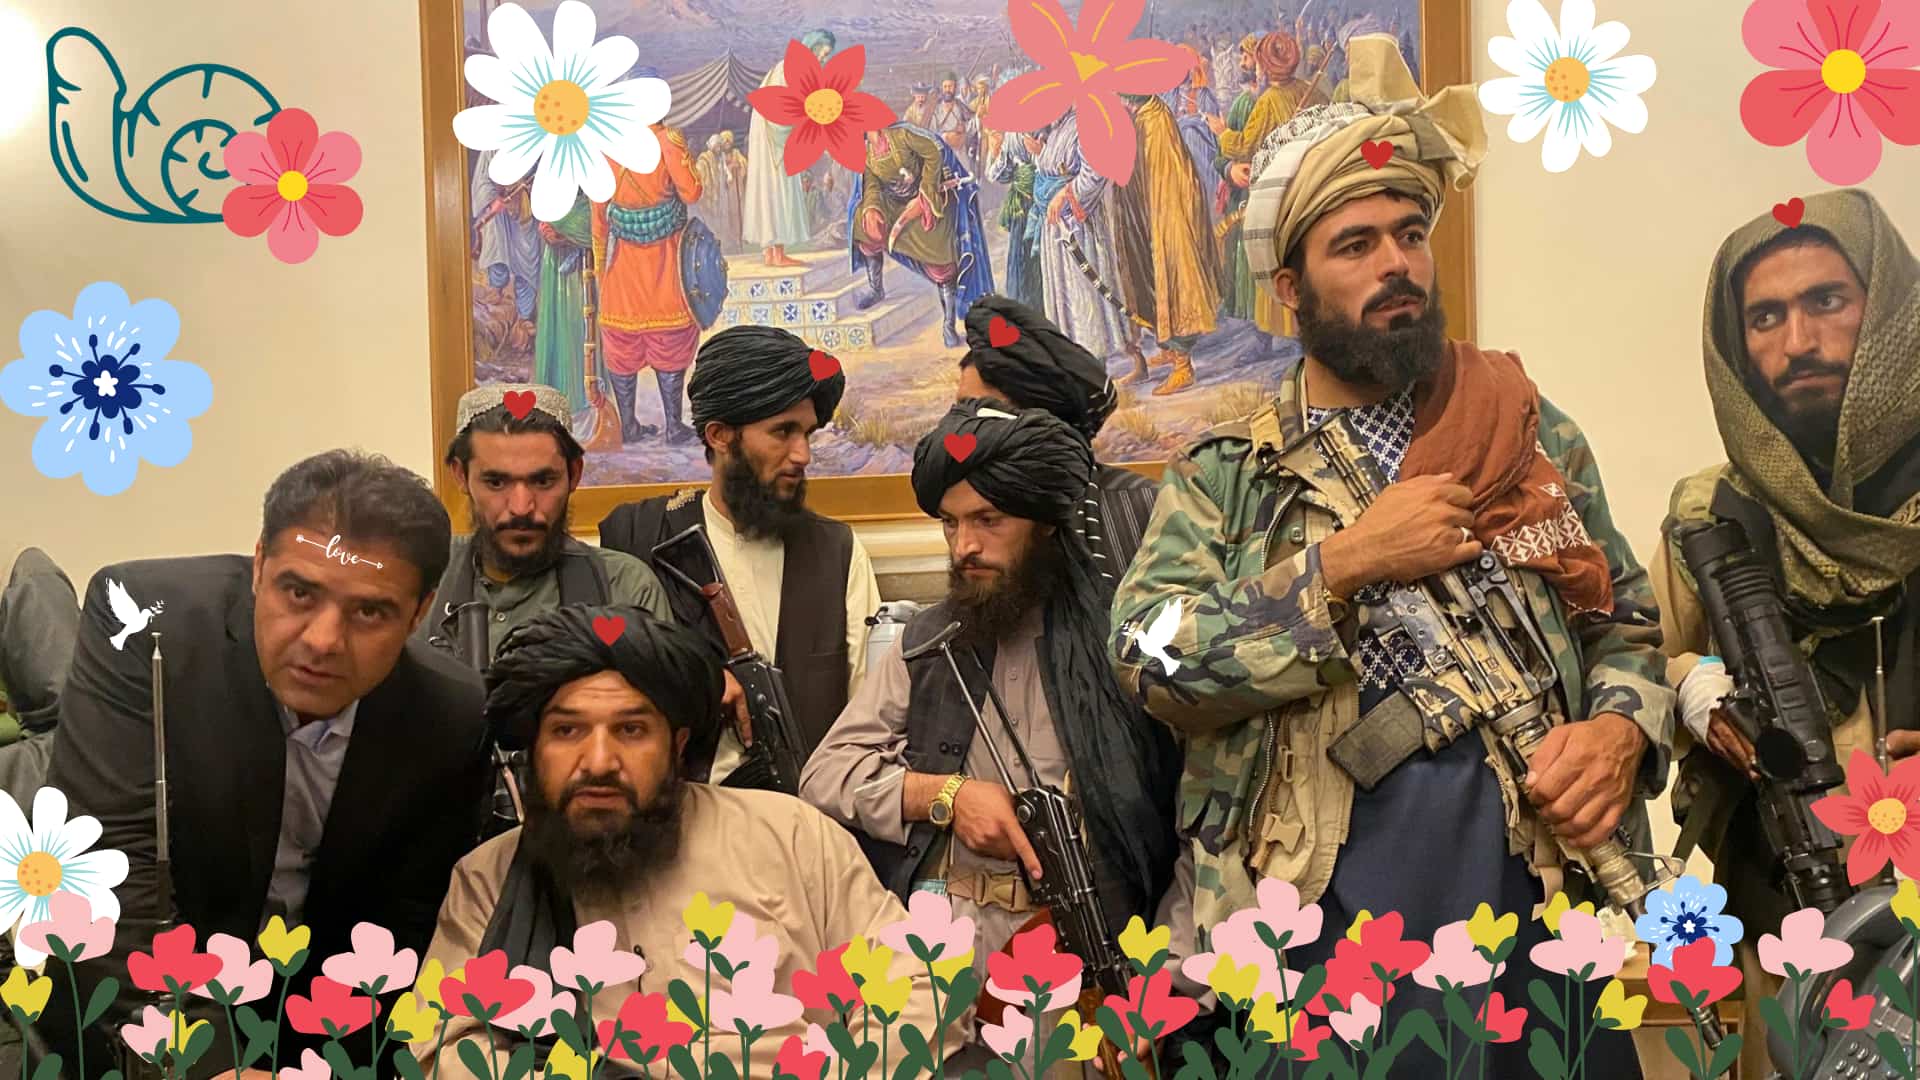 Bild für den Beitrag: Taliban weg vom Negativimage